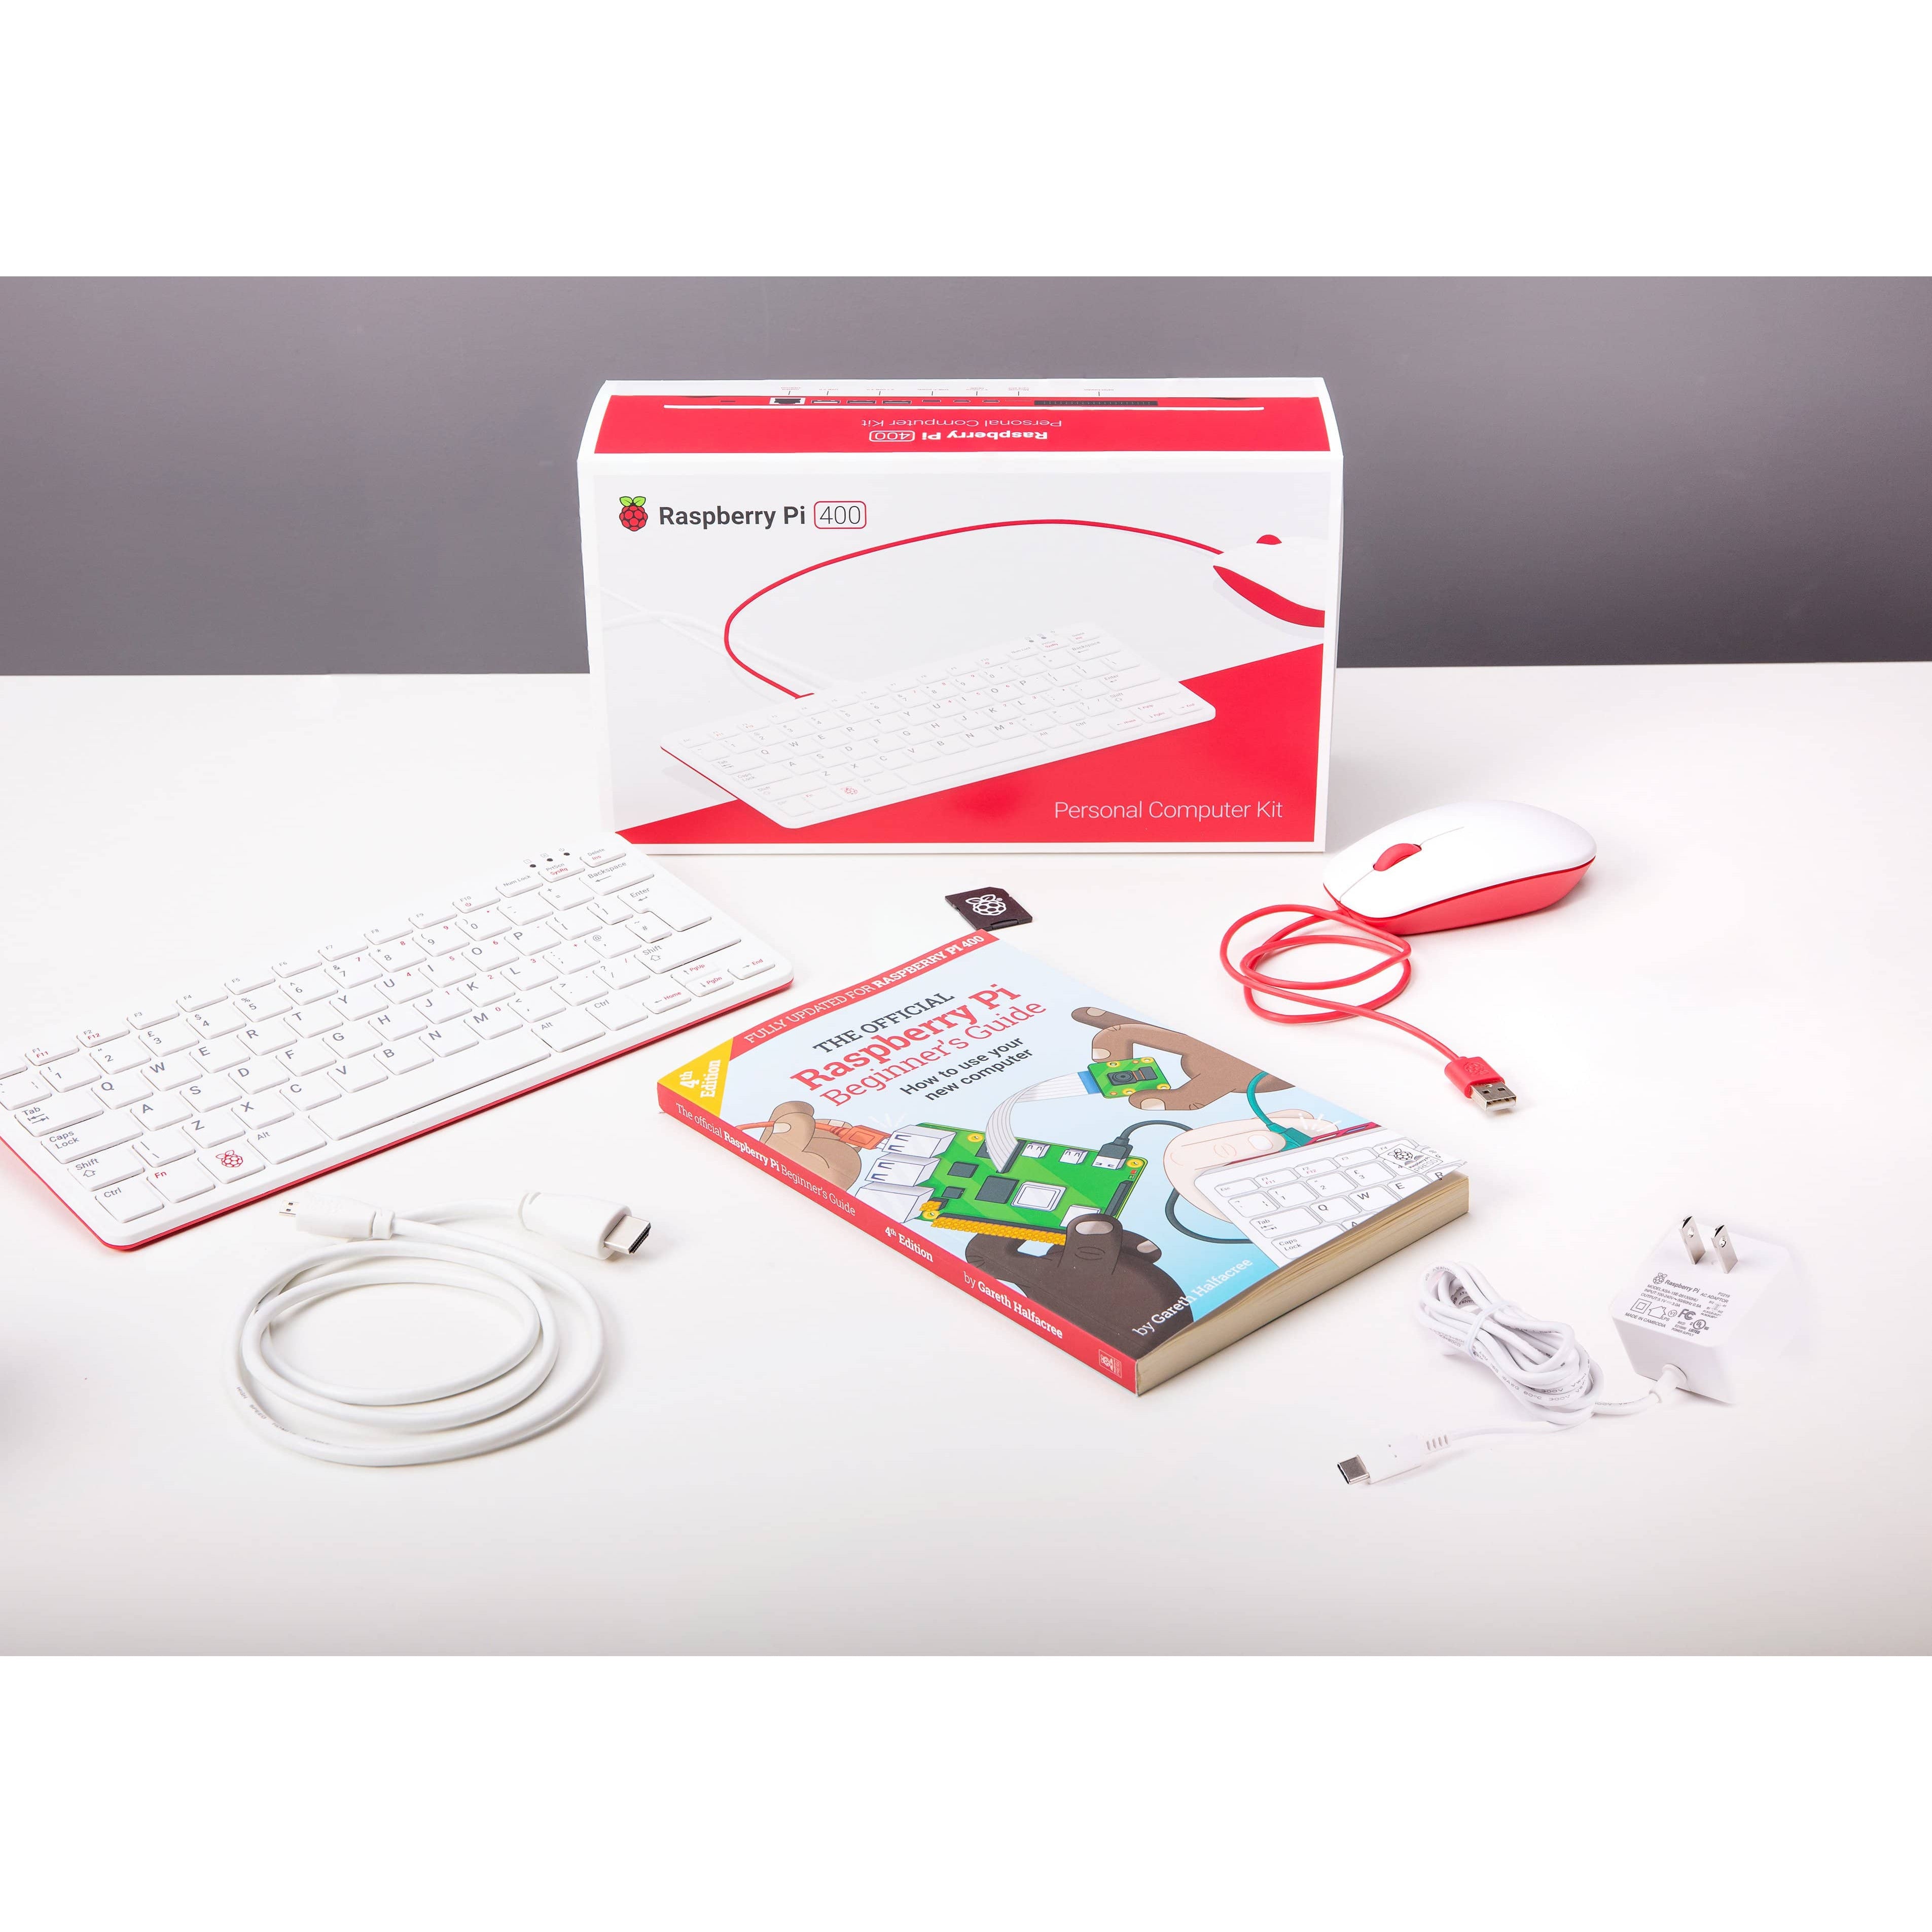 Raspberry Pi 400 Official Kit